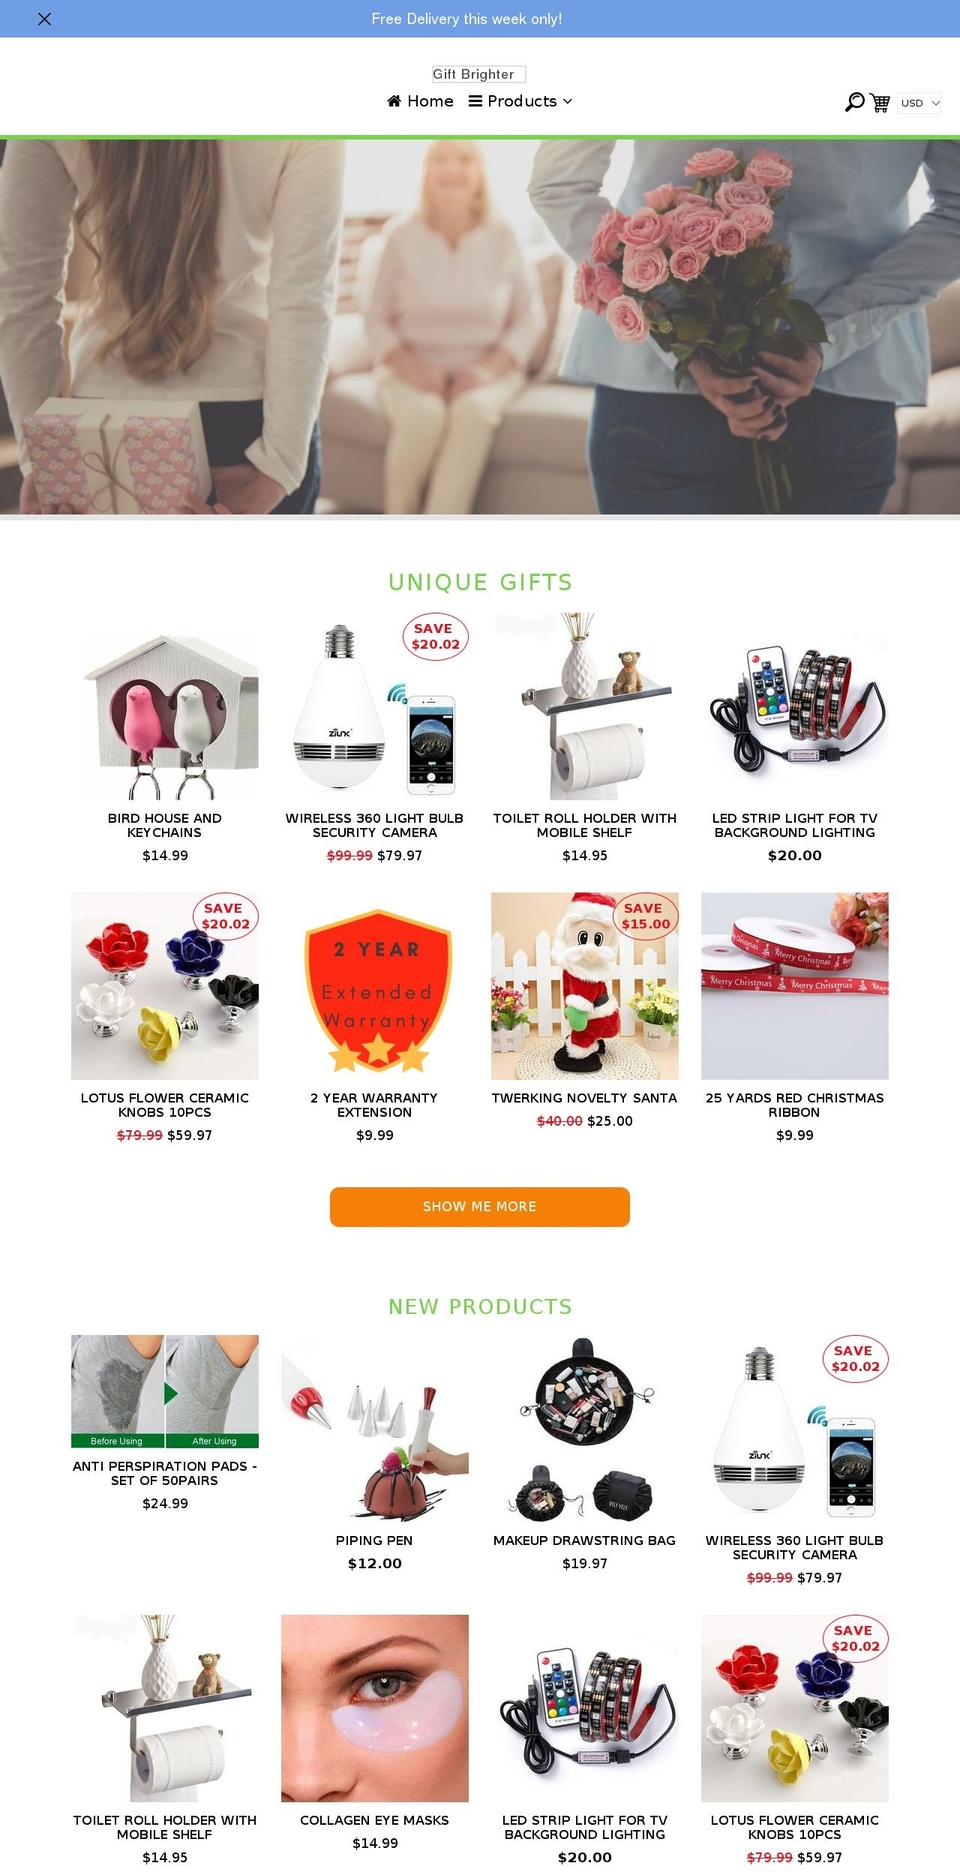 ecom-turbo-v2-7 Shopify theme site example giftbrighter.com